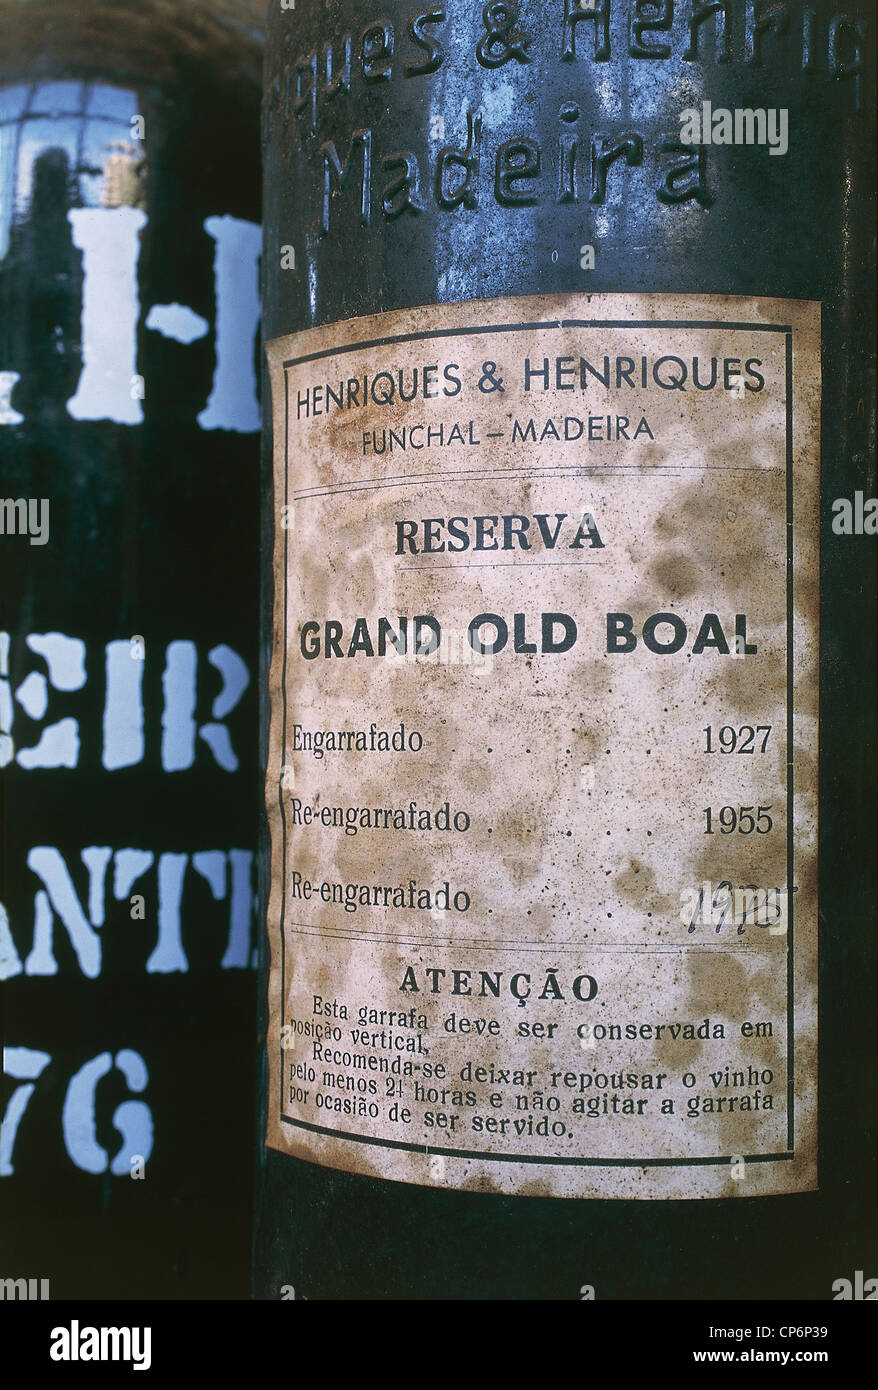 Portugal - Archipelago of Madeira - Madeira - Camara de Lobos - Madeira label of a wine Henriques & Henriques Stock Photo